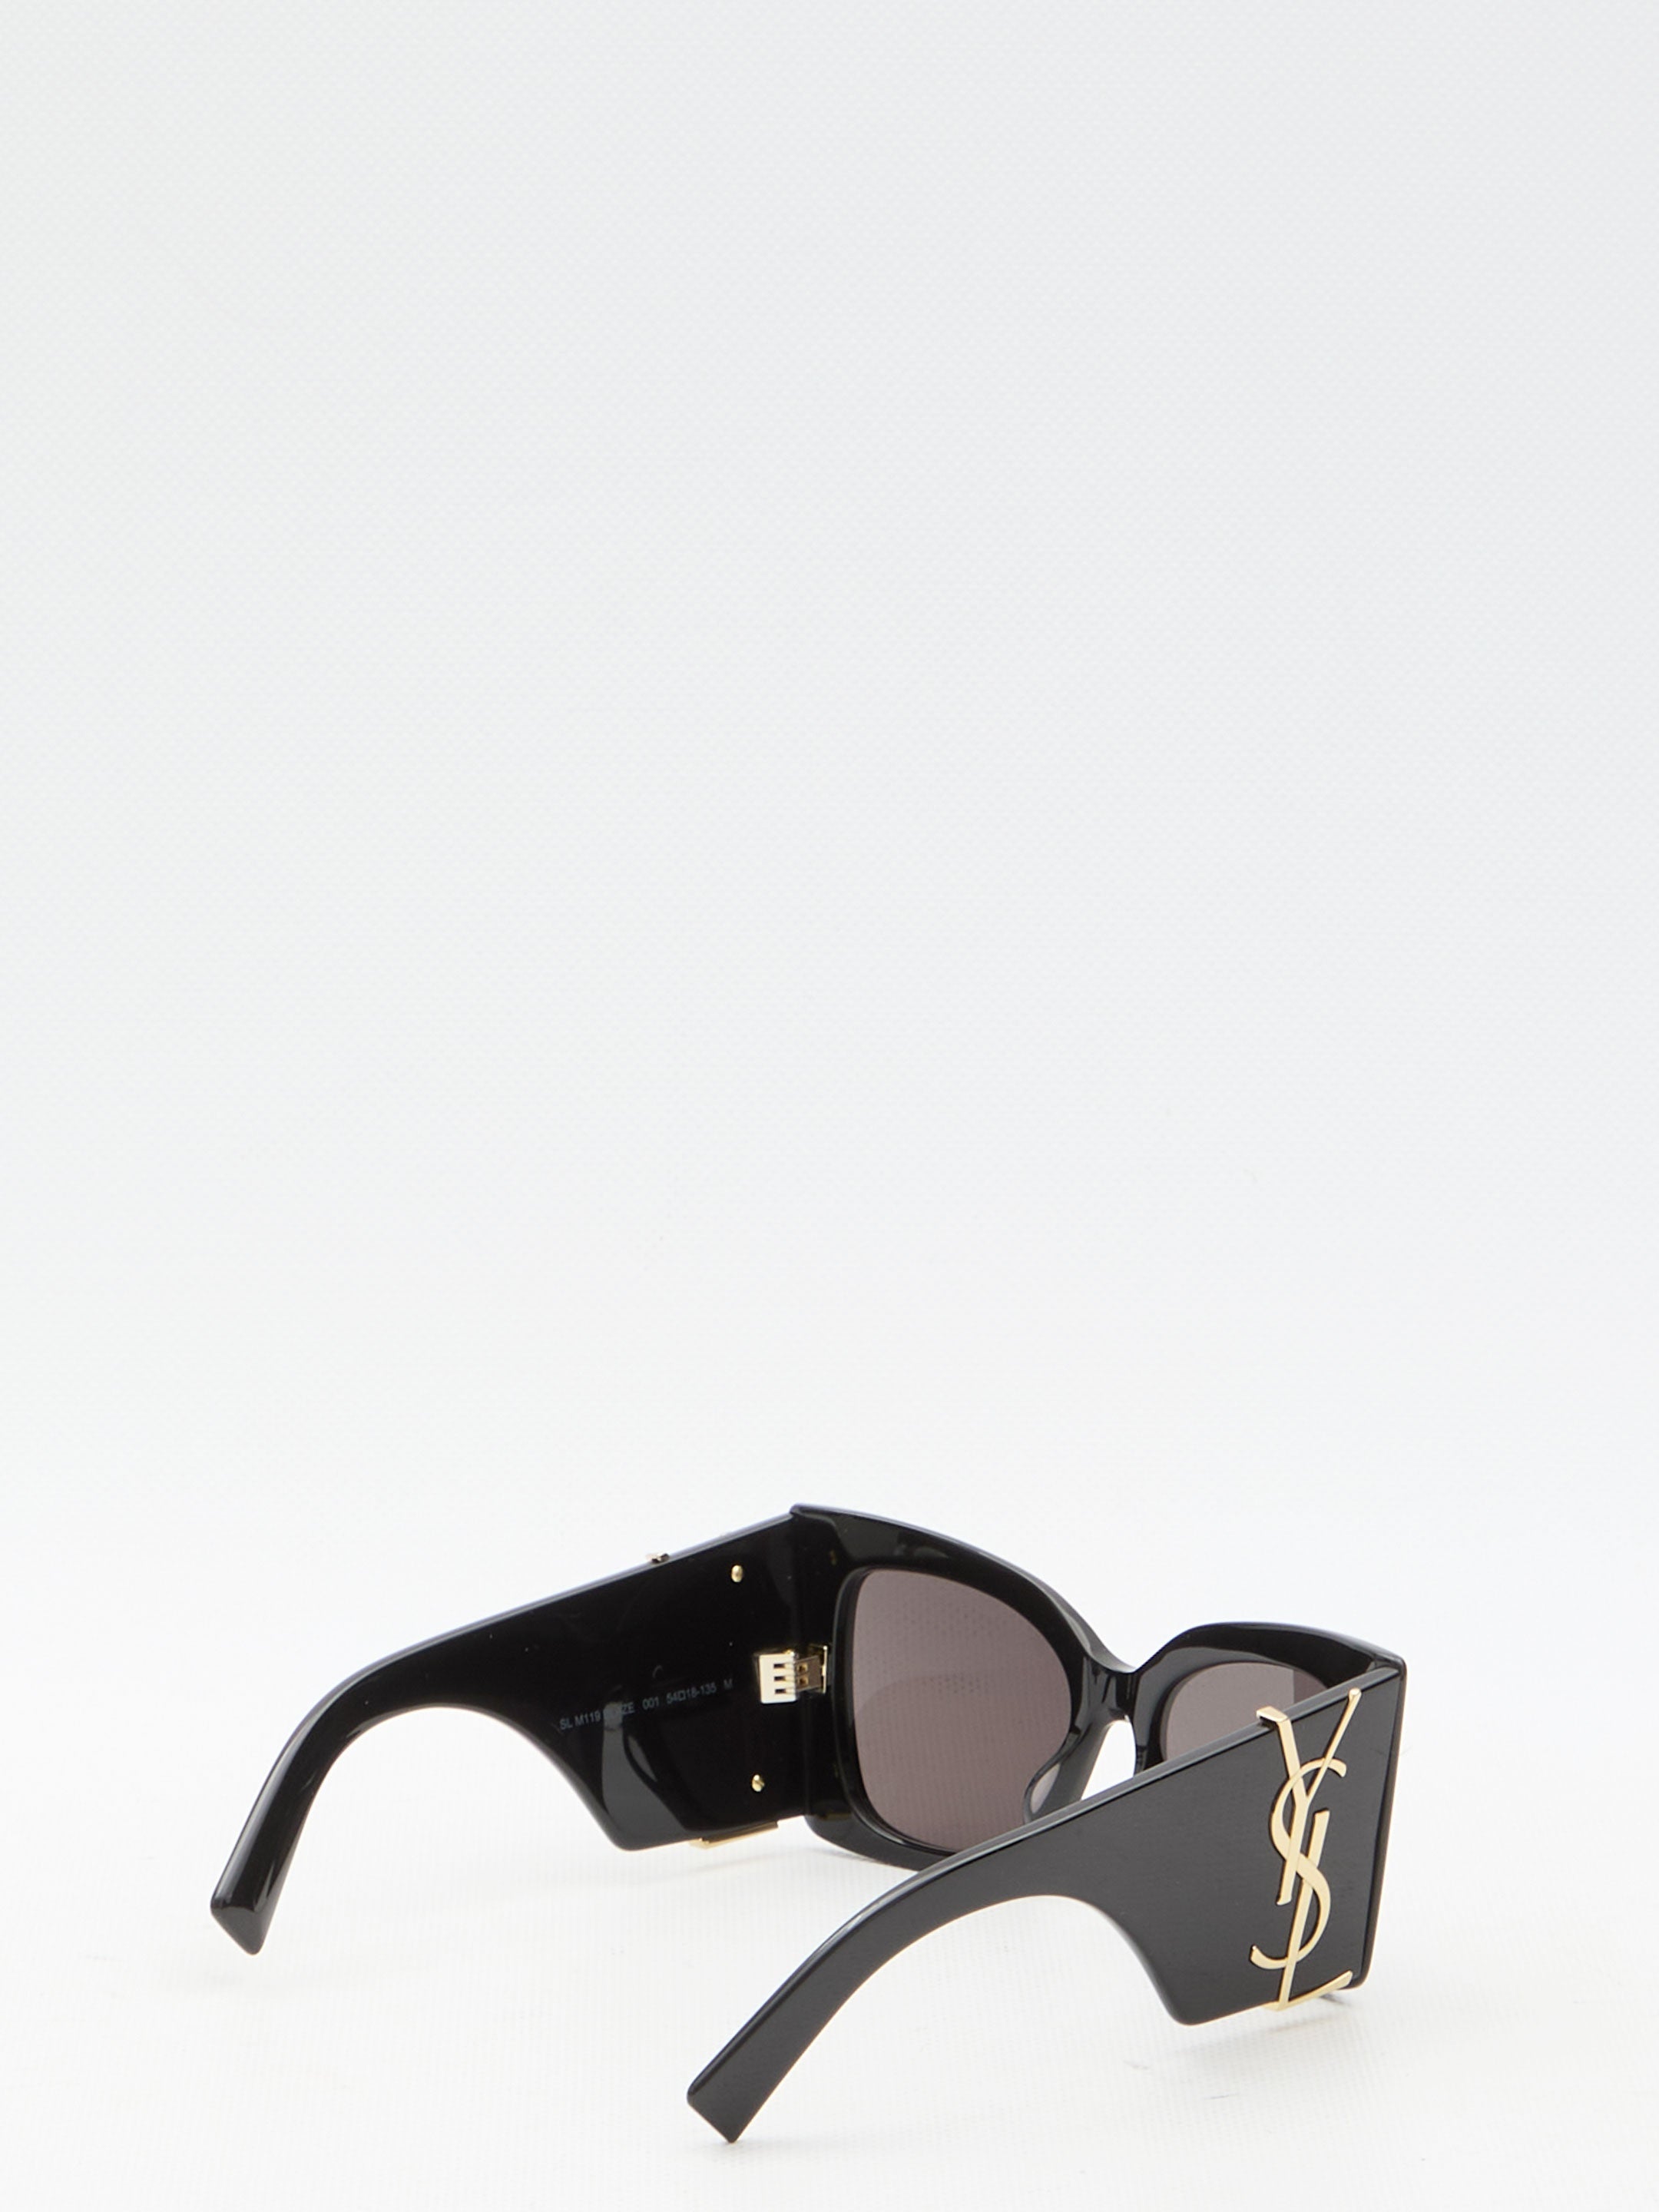 SL M119 Blaze sunglasses